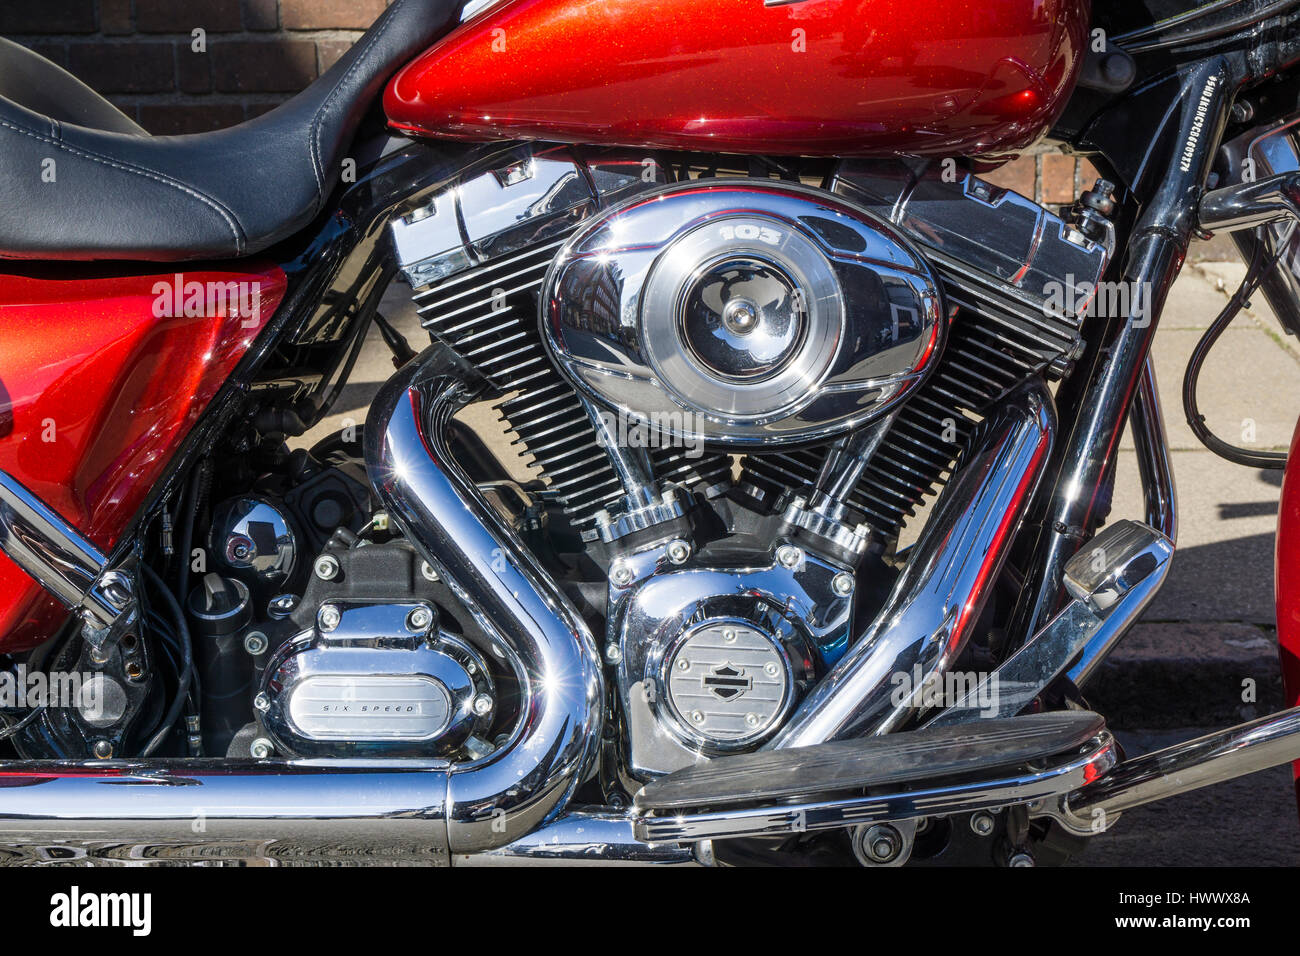 Moto Harley Davidson détail moteur Banque D'Images